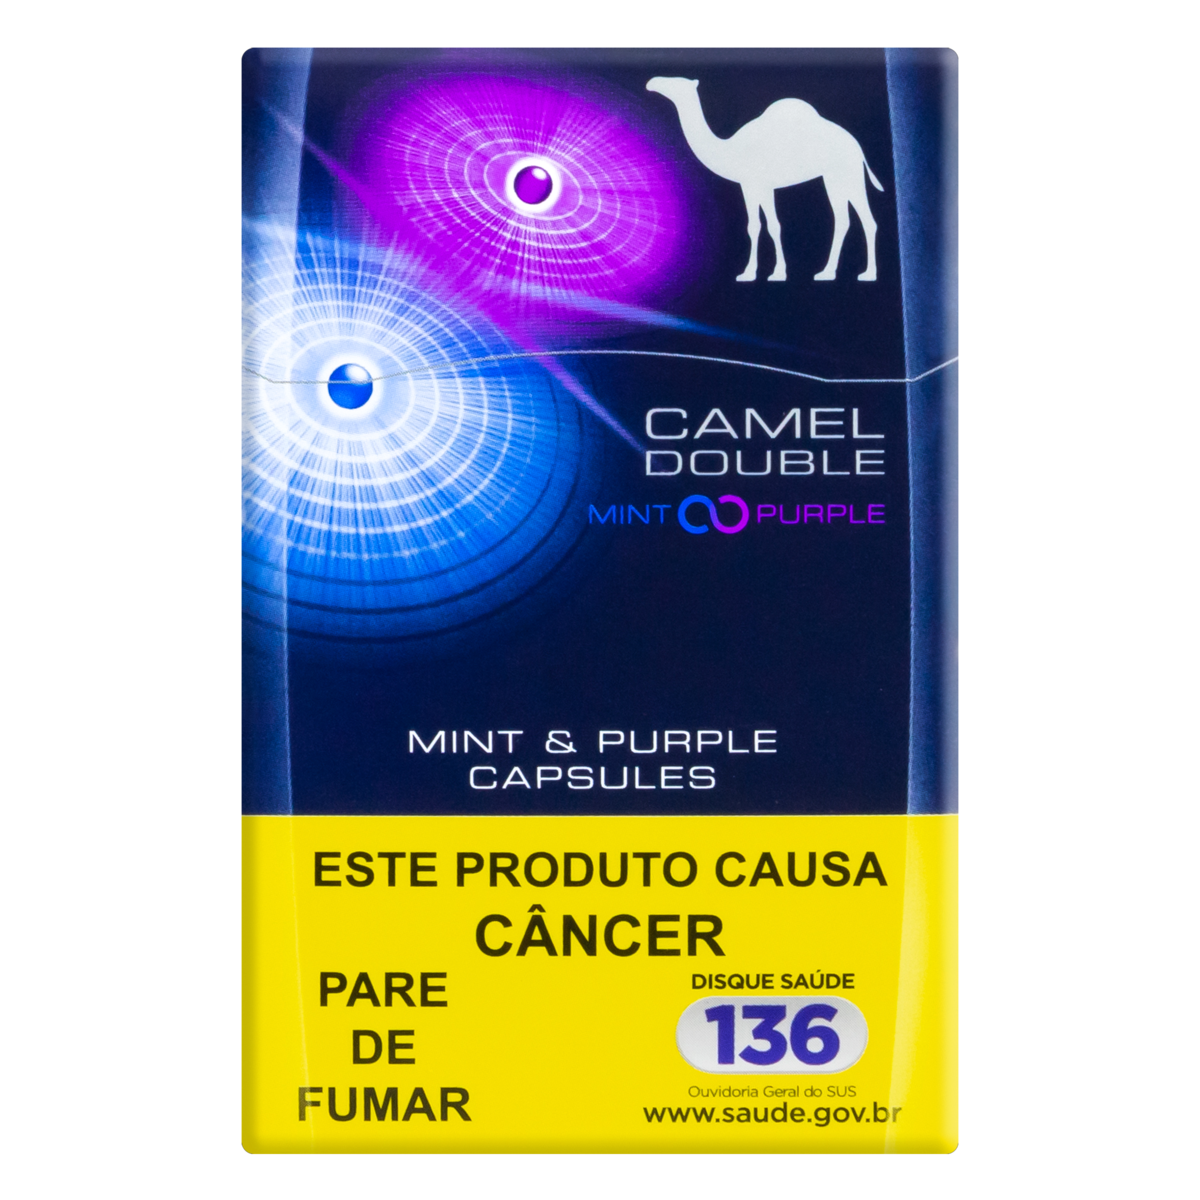 0000078938953 - CIGARRO DOUBLE MINT & PURPLE CAMEL 20 UNIDADES